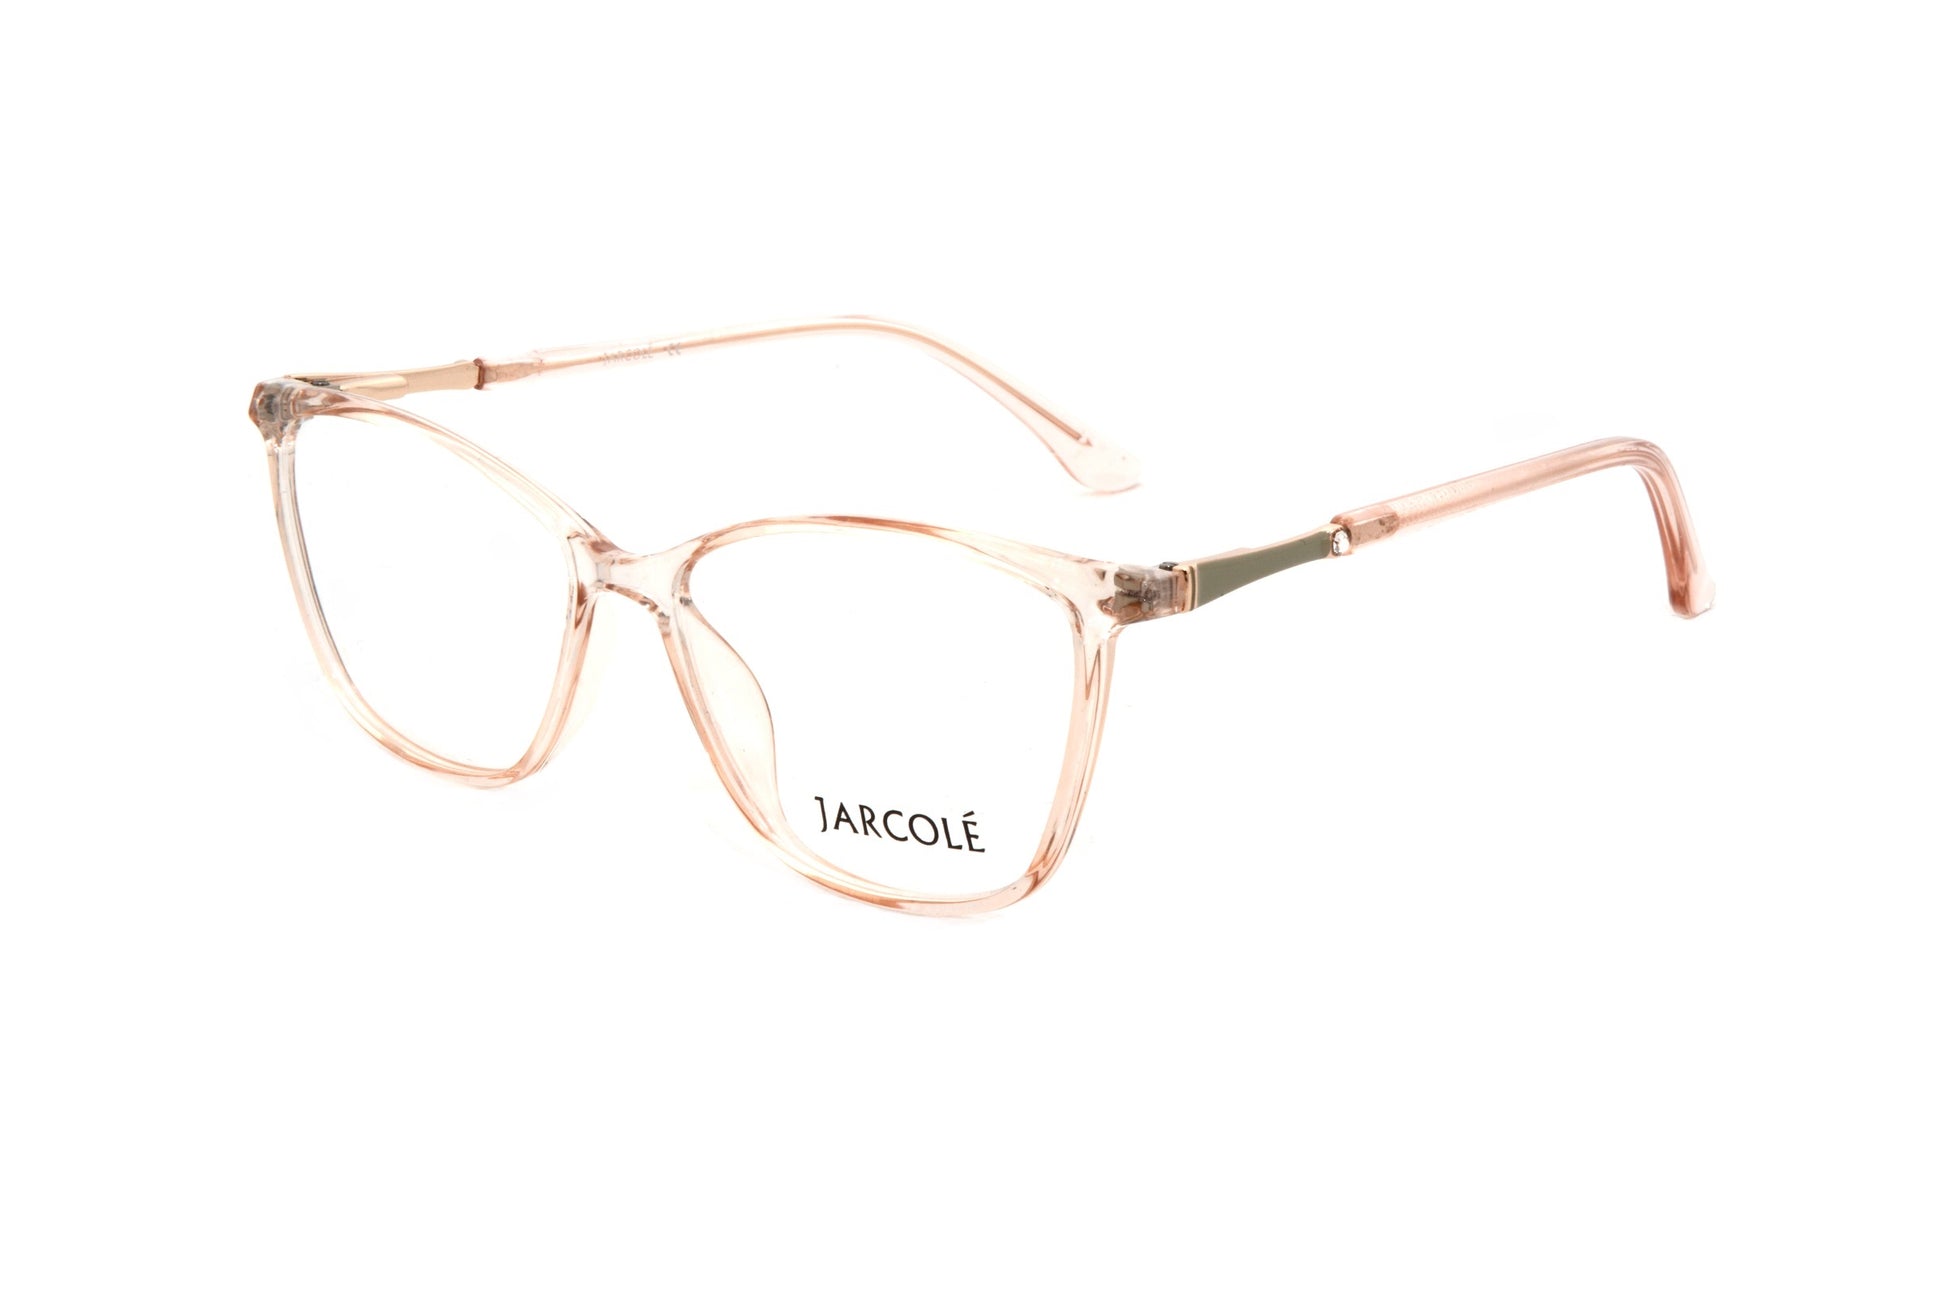 Jarcole eyewear T812 C4